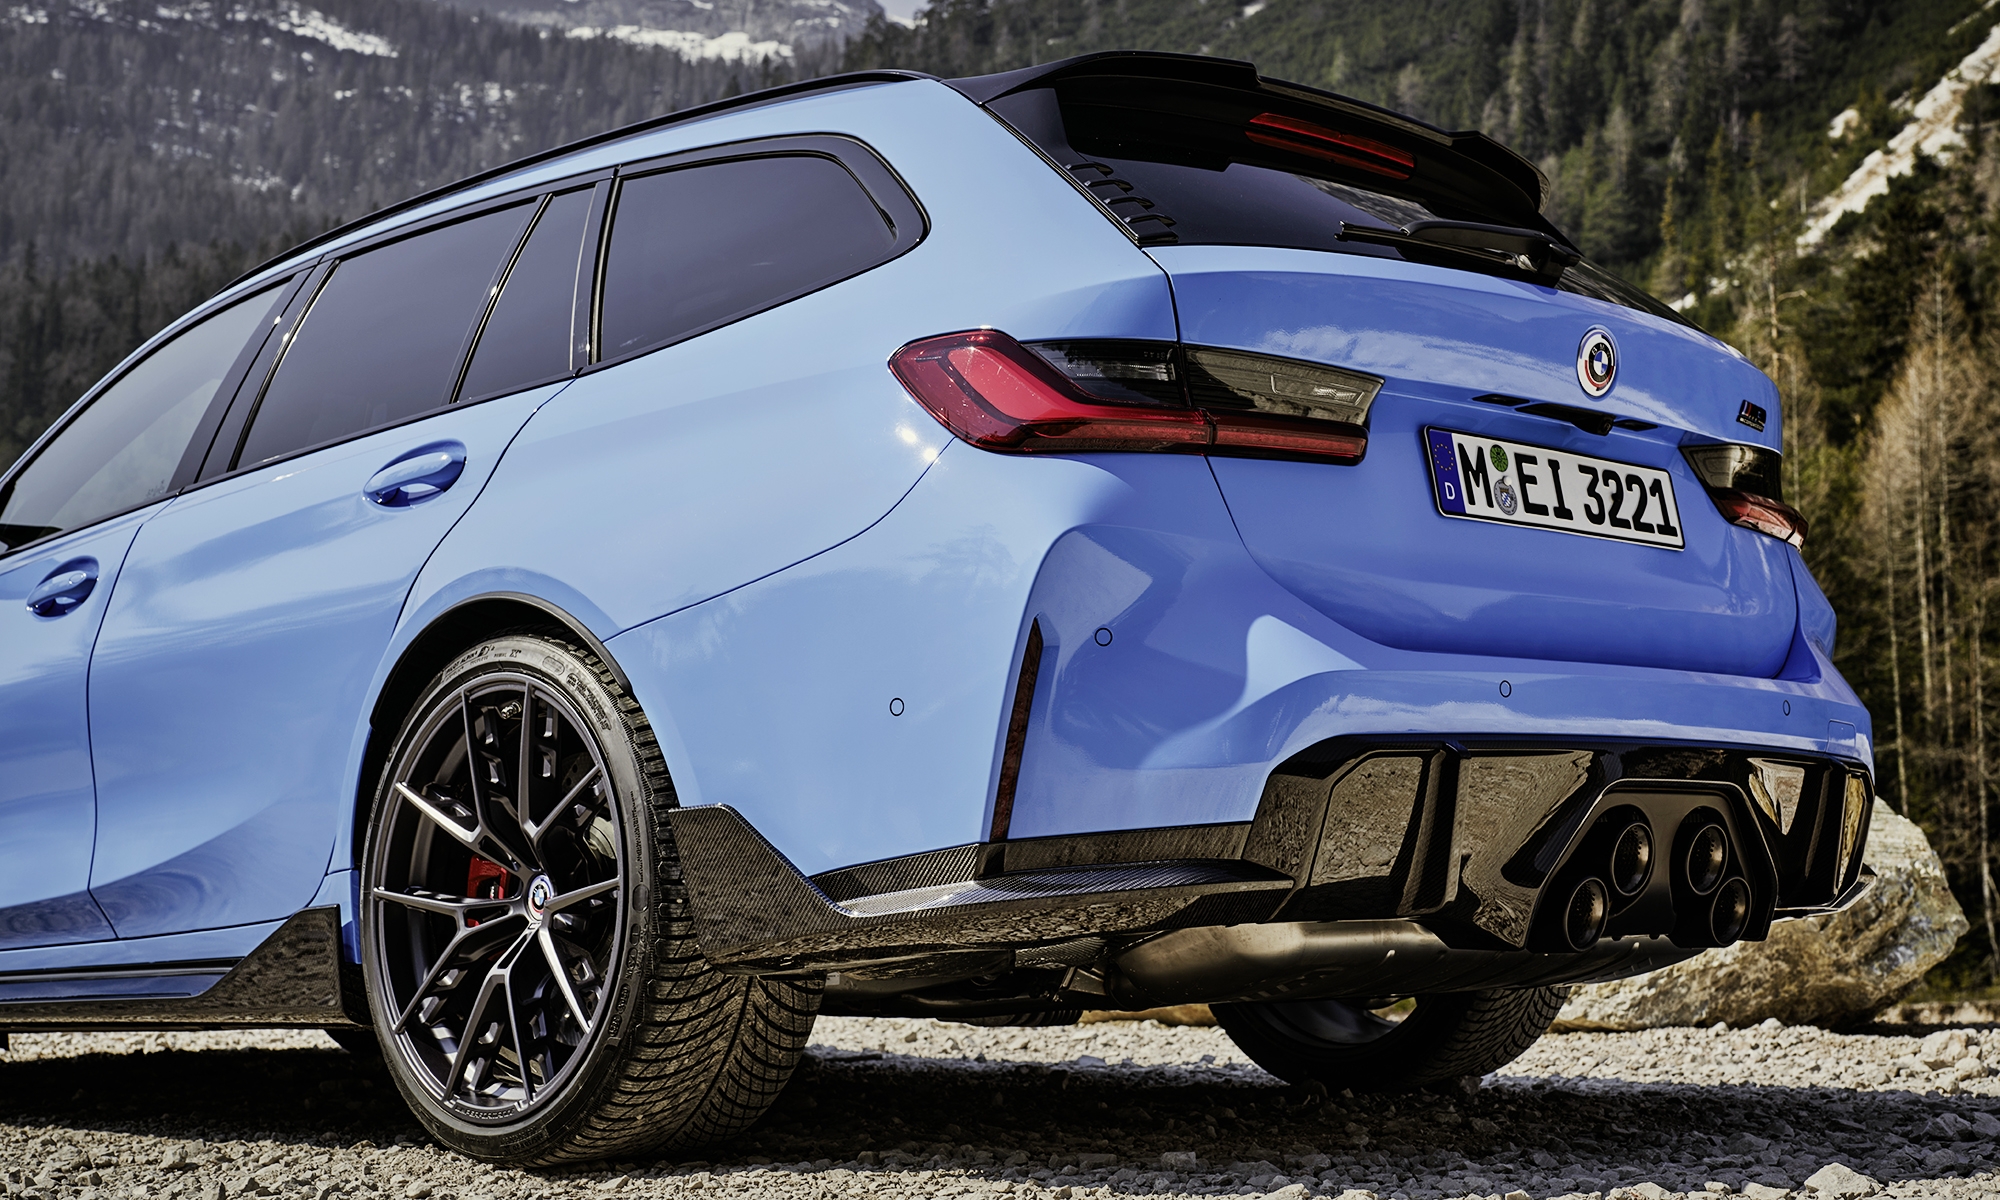 El nuevo BMW i3 tendrá versiones deportivas, tanto con carrocería sedán como familiar, al igual que sucede en el actual M3.